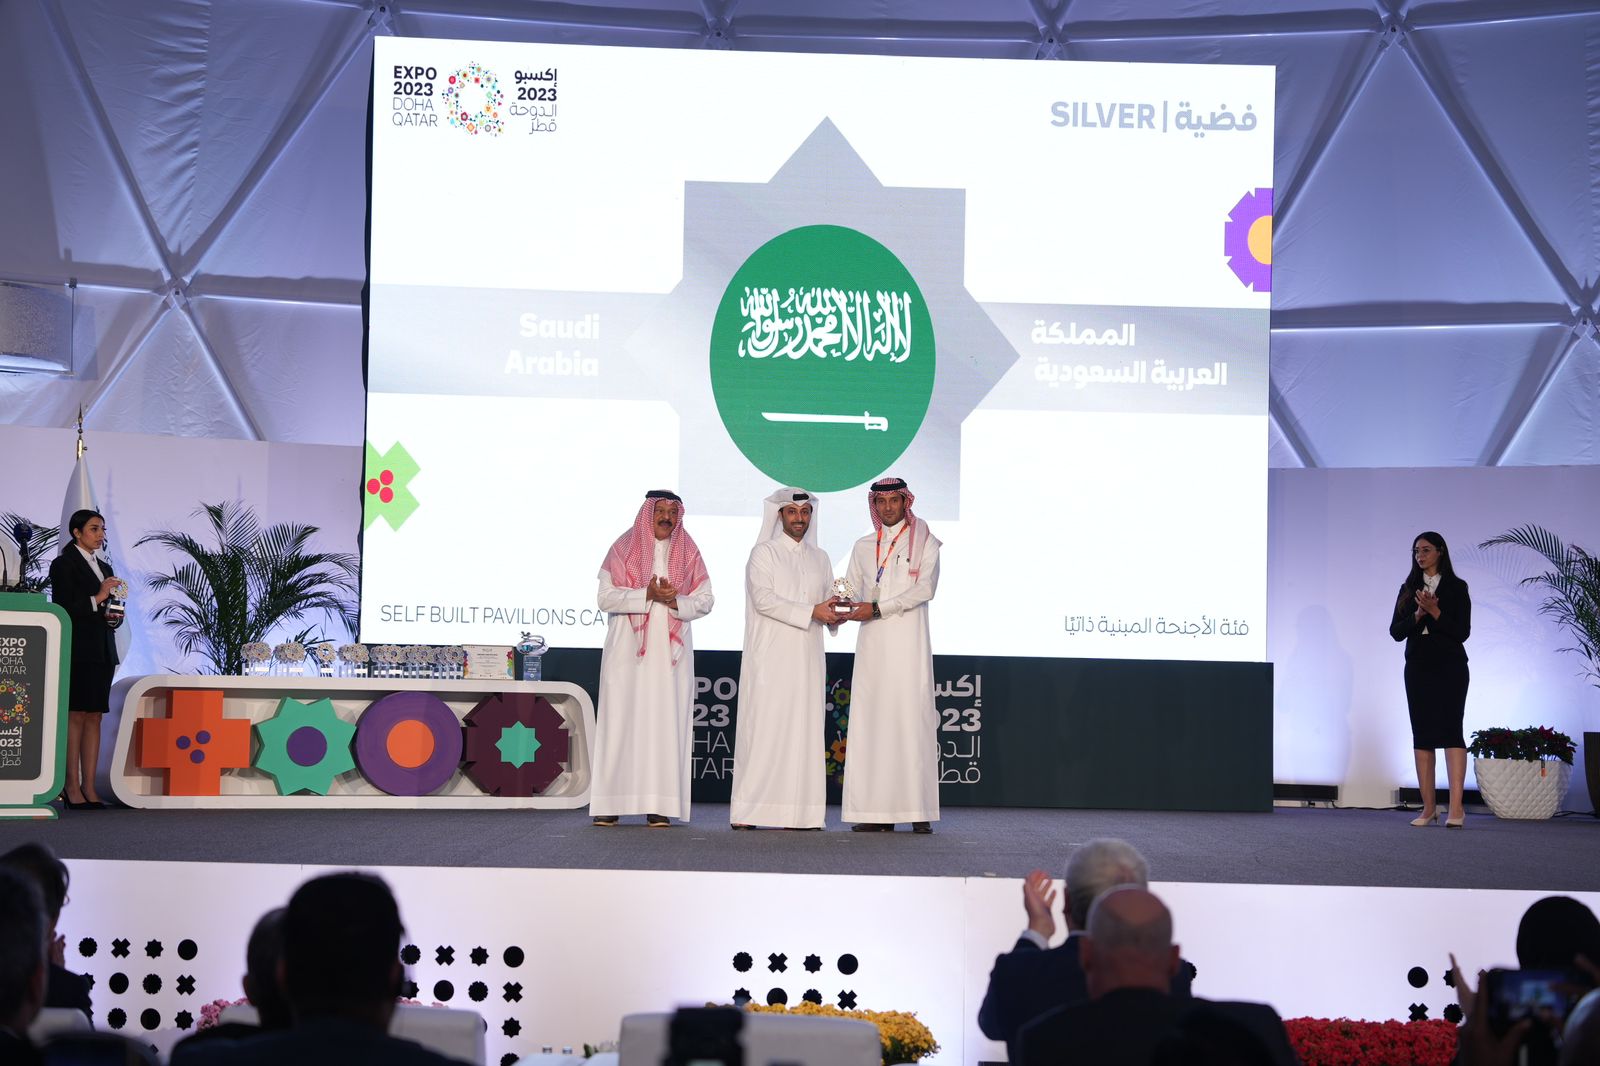 المملكة تختتم مشاركتها في إكسبو الدوحة 2023 للبستنة وتحصد 5 جوائز وأرقام قياسية عالمية وتفاعل 1.8 مليون زائر